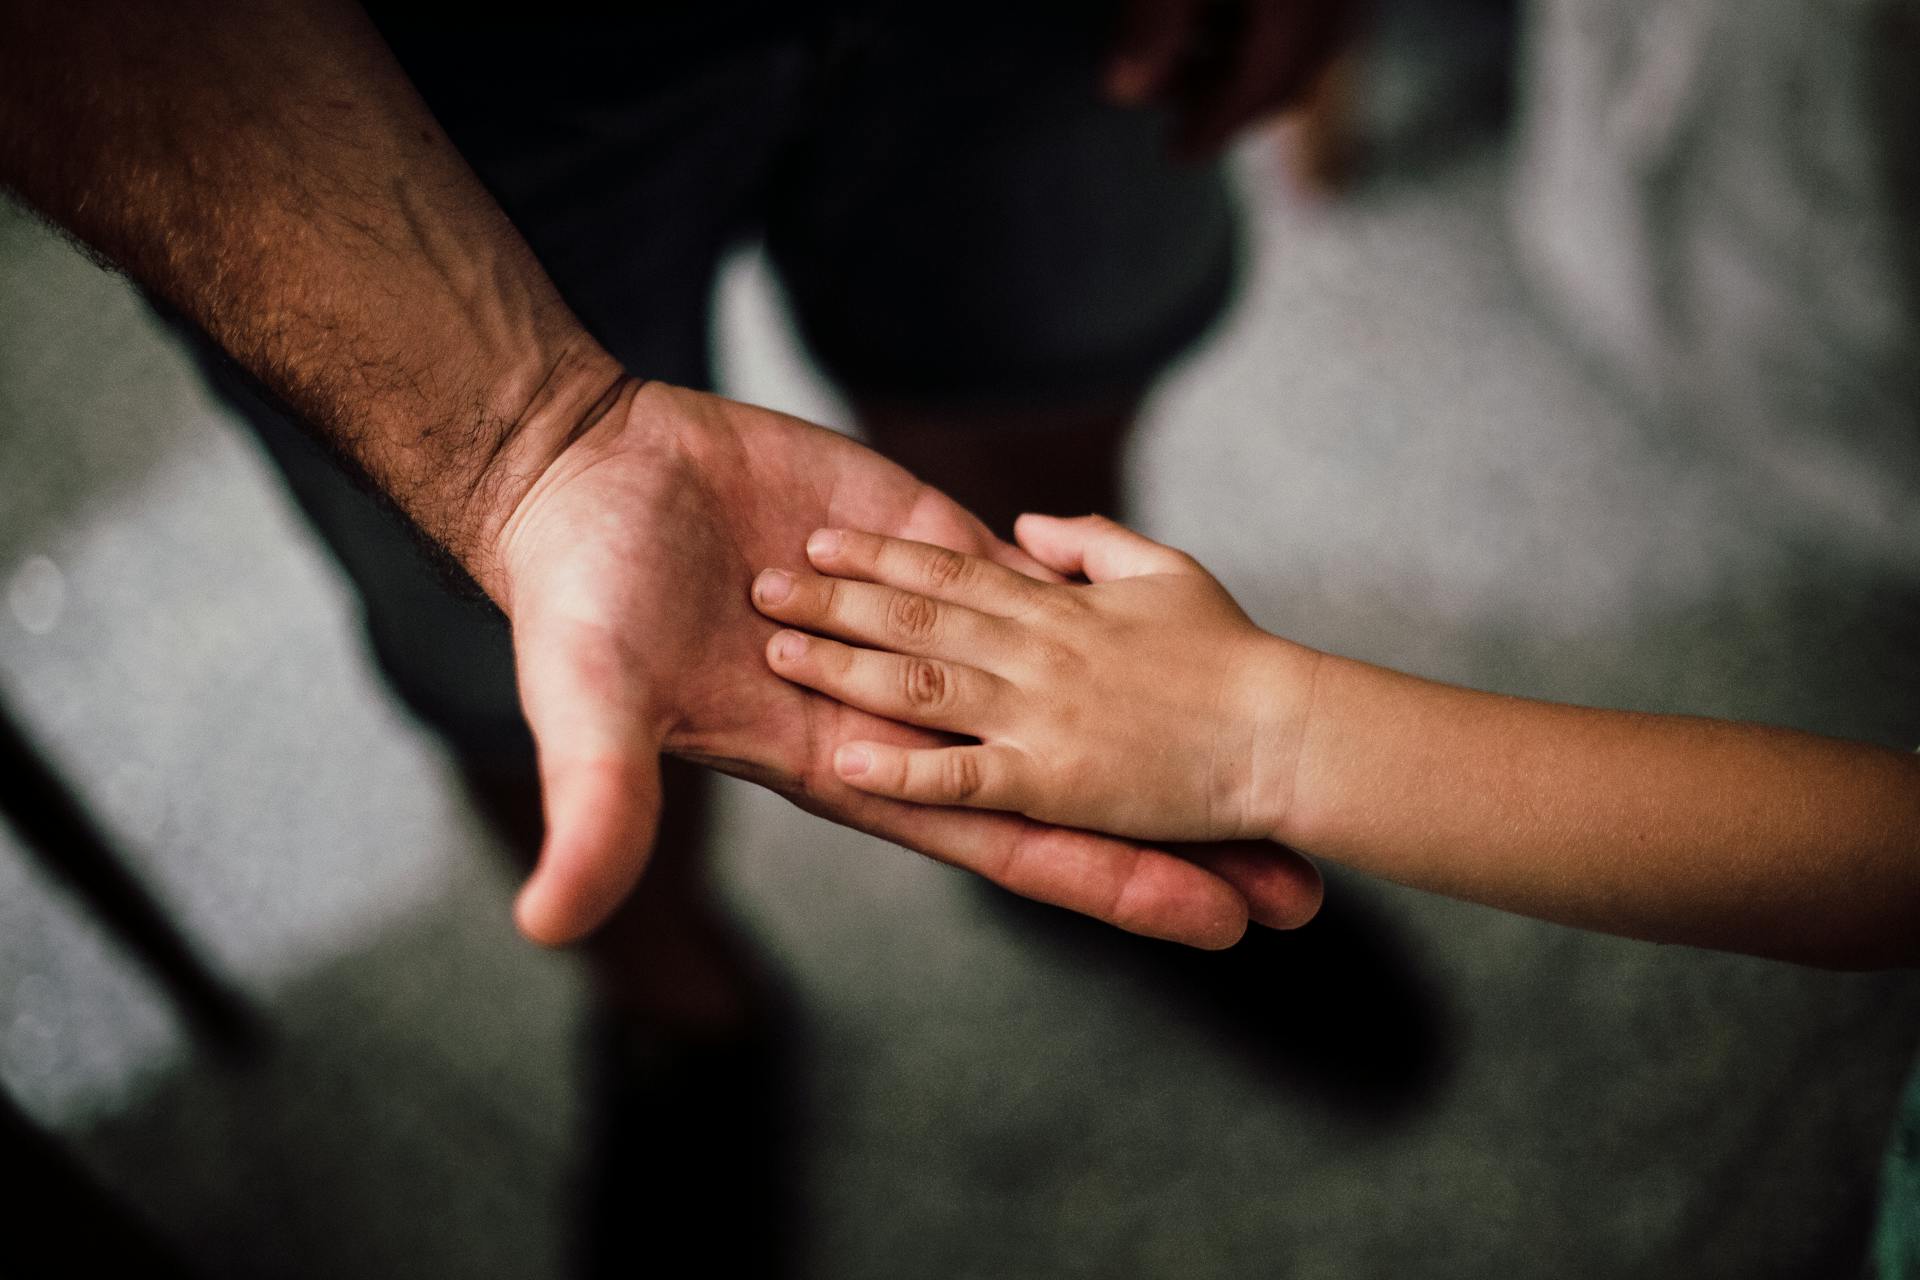 La mano de un niño apoyada en la de su padre | Fuente: Pexels